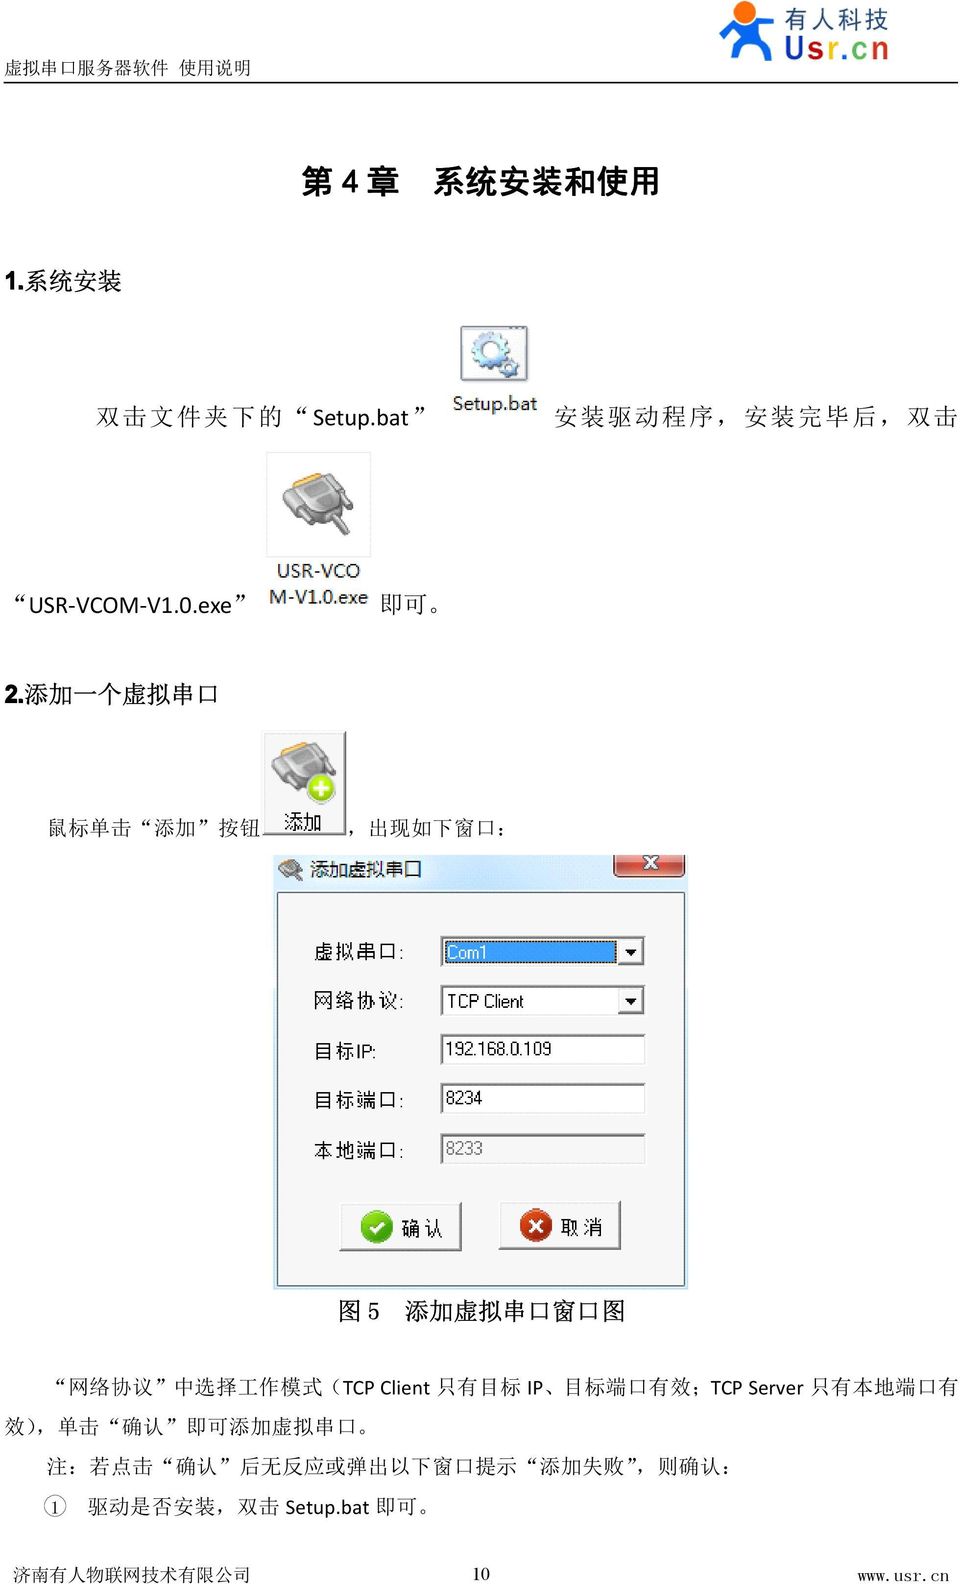 添 加 一 个 虚 拟 串 口 鼠 标 单 击 添 加 按 钮, 出 现 如 下 窗 口 : 图 5 添 加 虚 拟 串 口 窗 口 图 网 络 协 议 中 选 择 工 作 模 式 (TCP